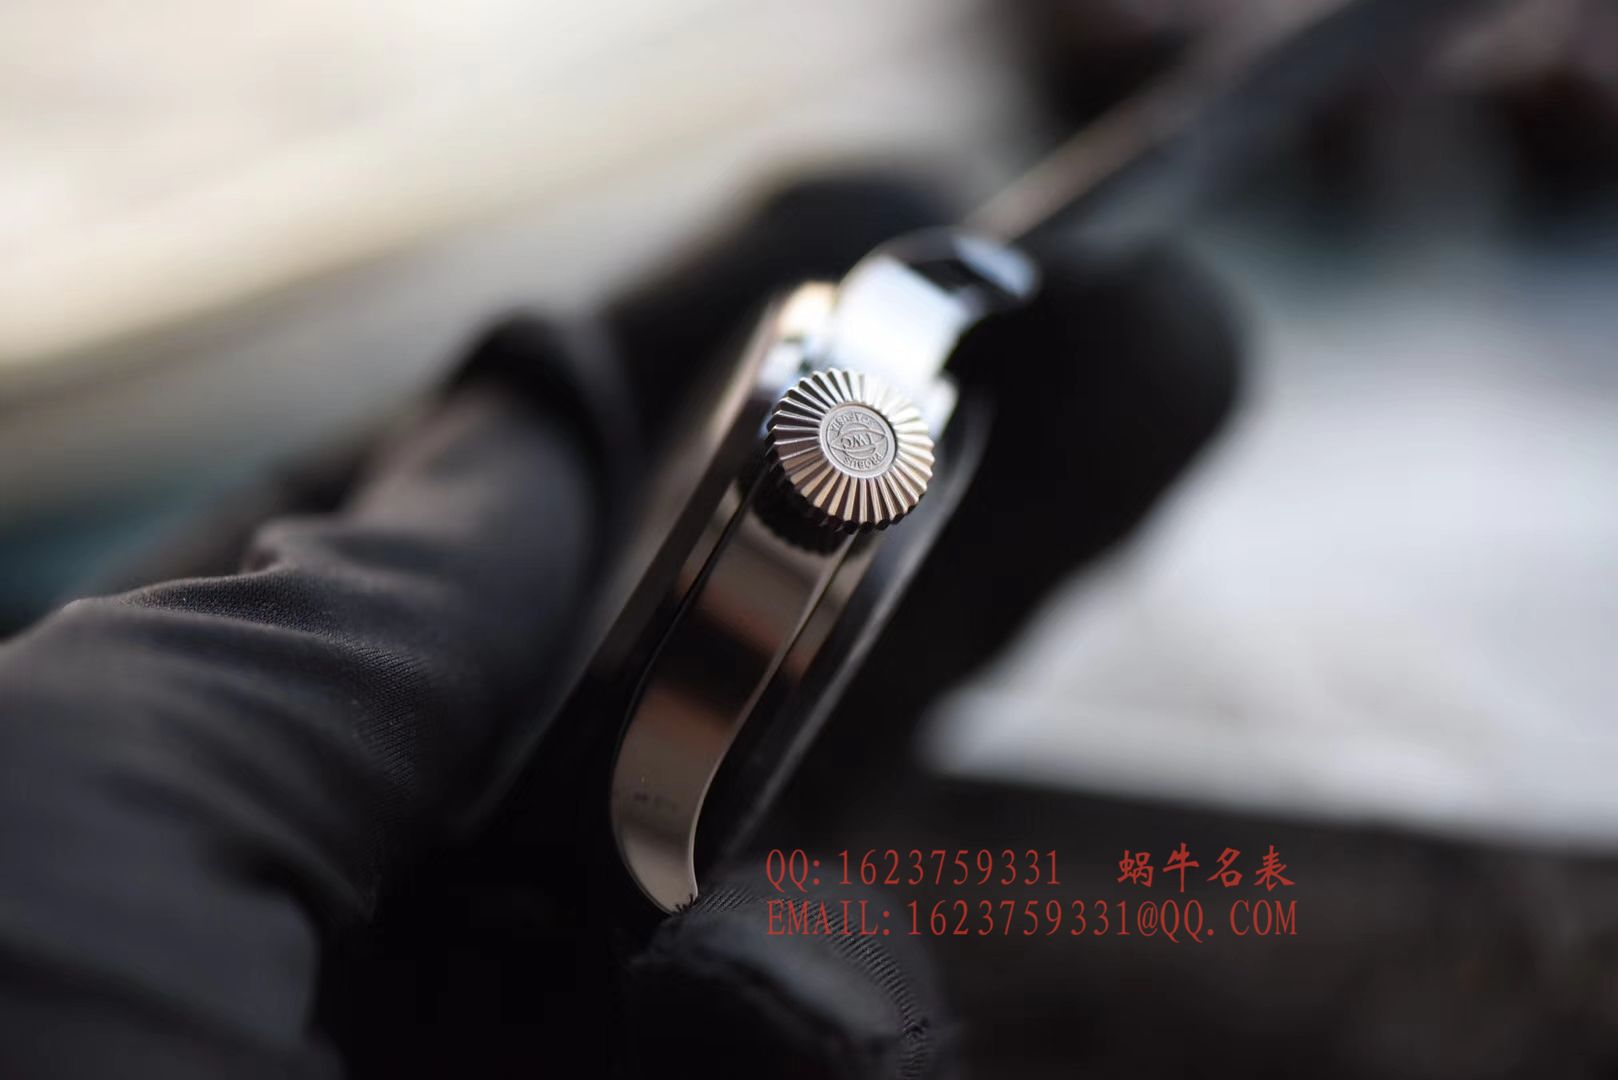 【YL一比一超A高仿手表】万国大型飞行员陶瓷款系列IW502003腕表 